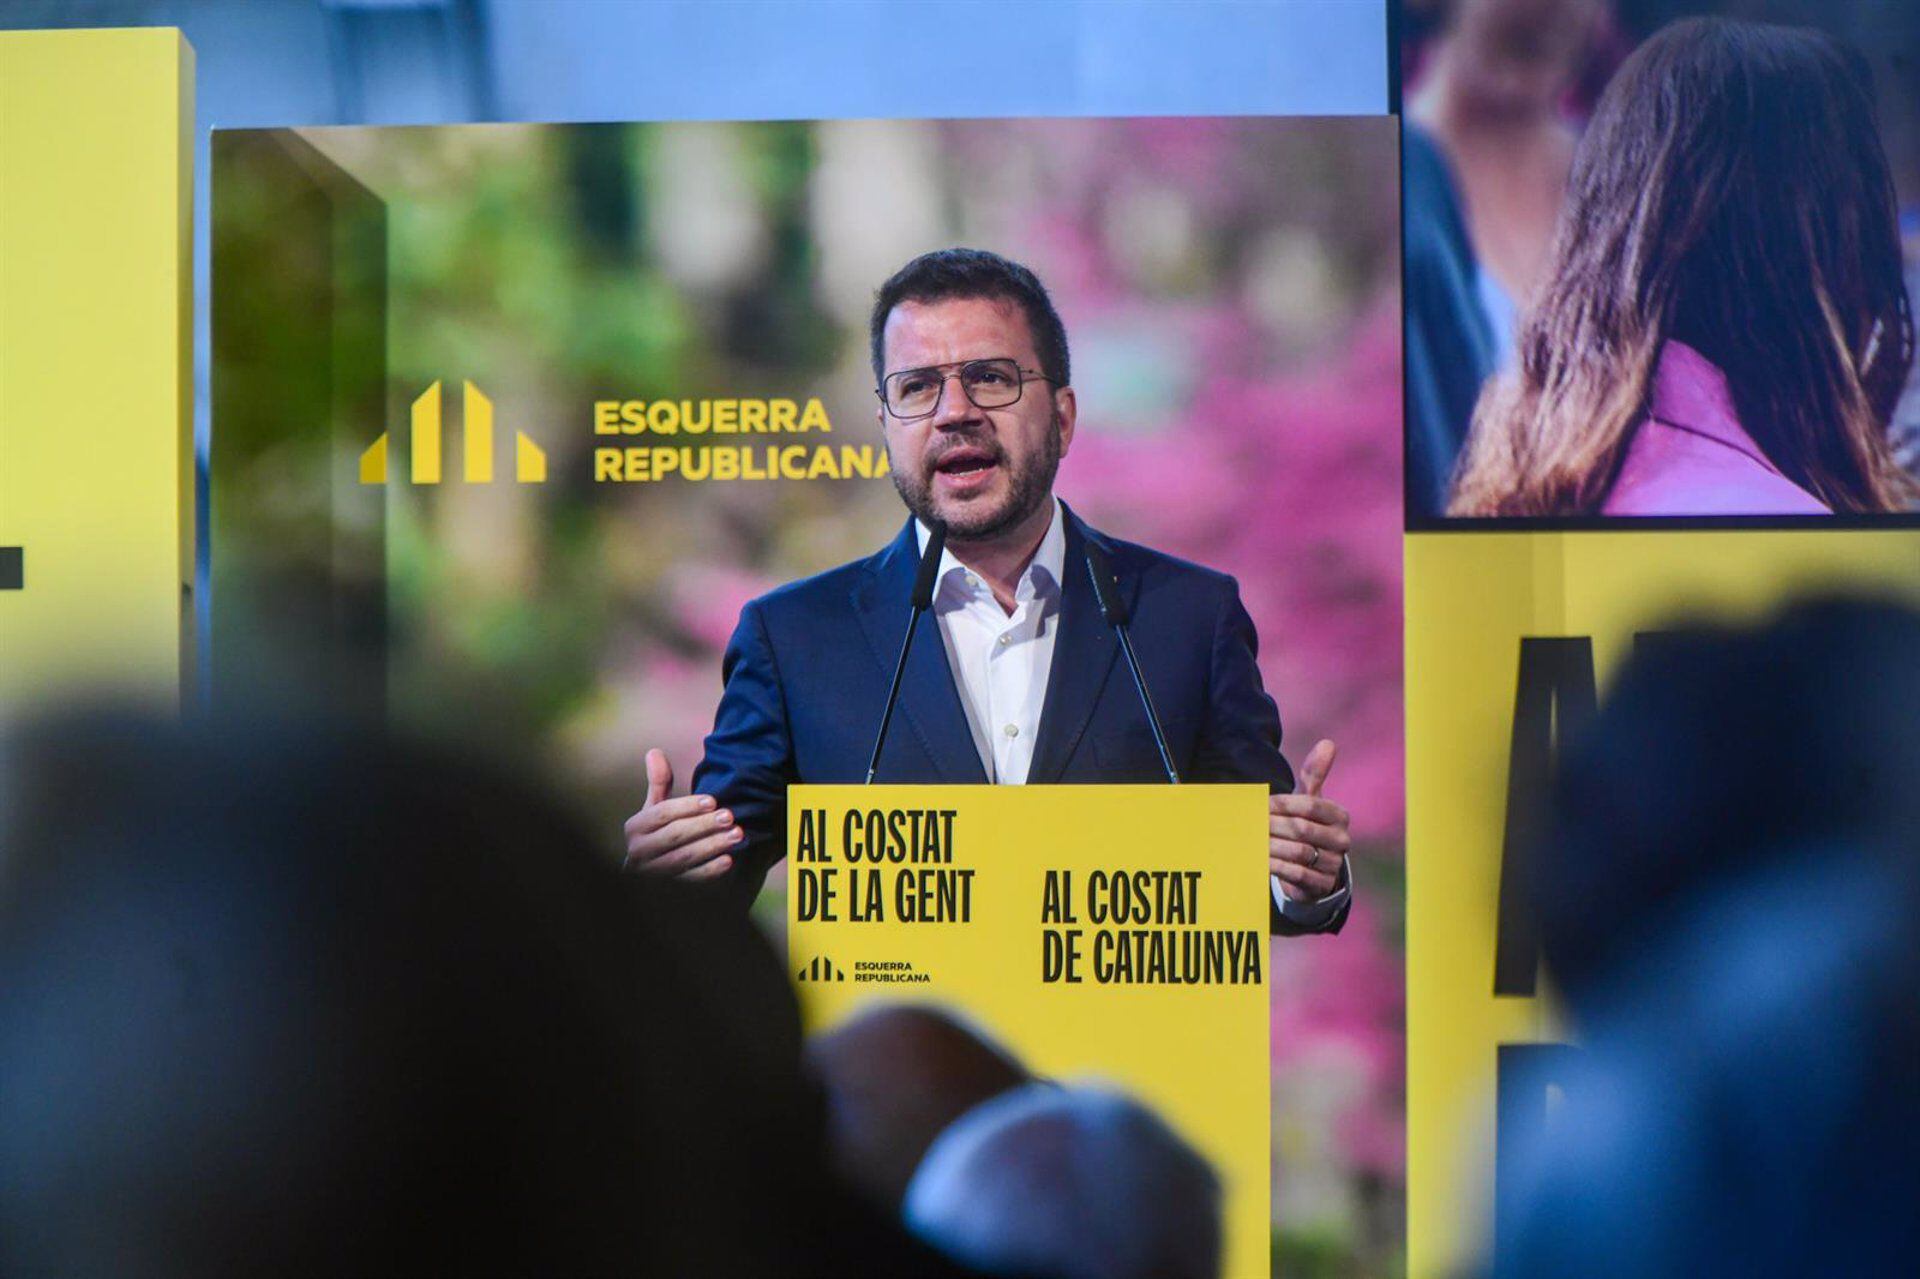 Aragonès promete coger “carrerilla” hacia el referéndum para conseguir una Cataluña libre